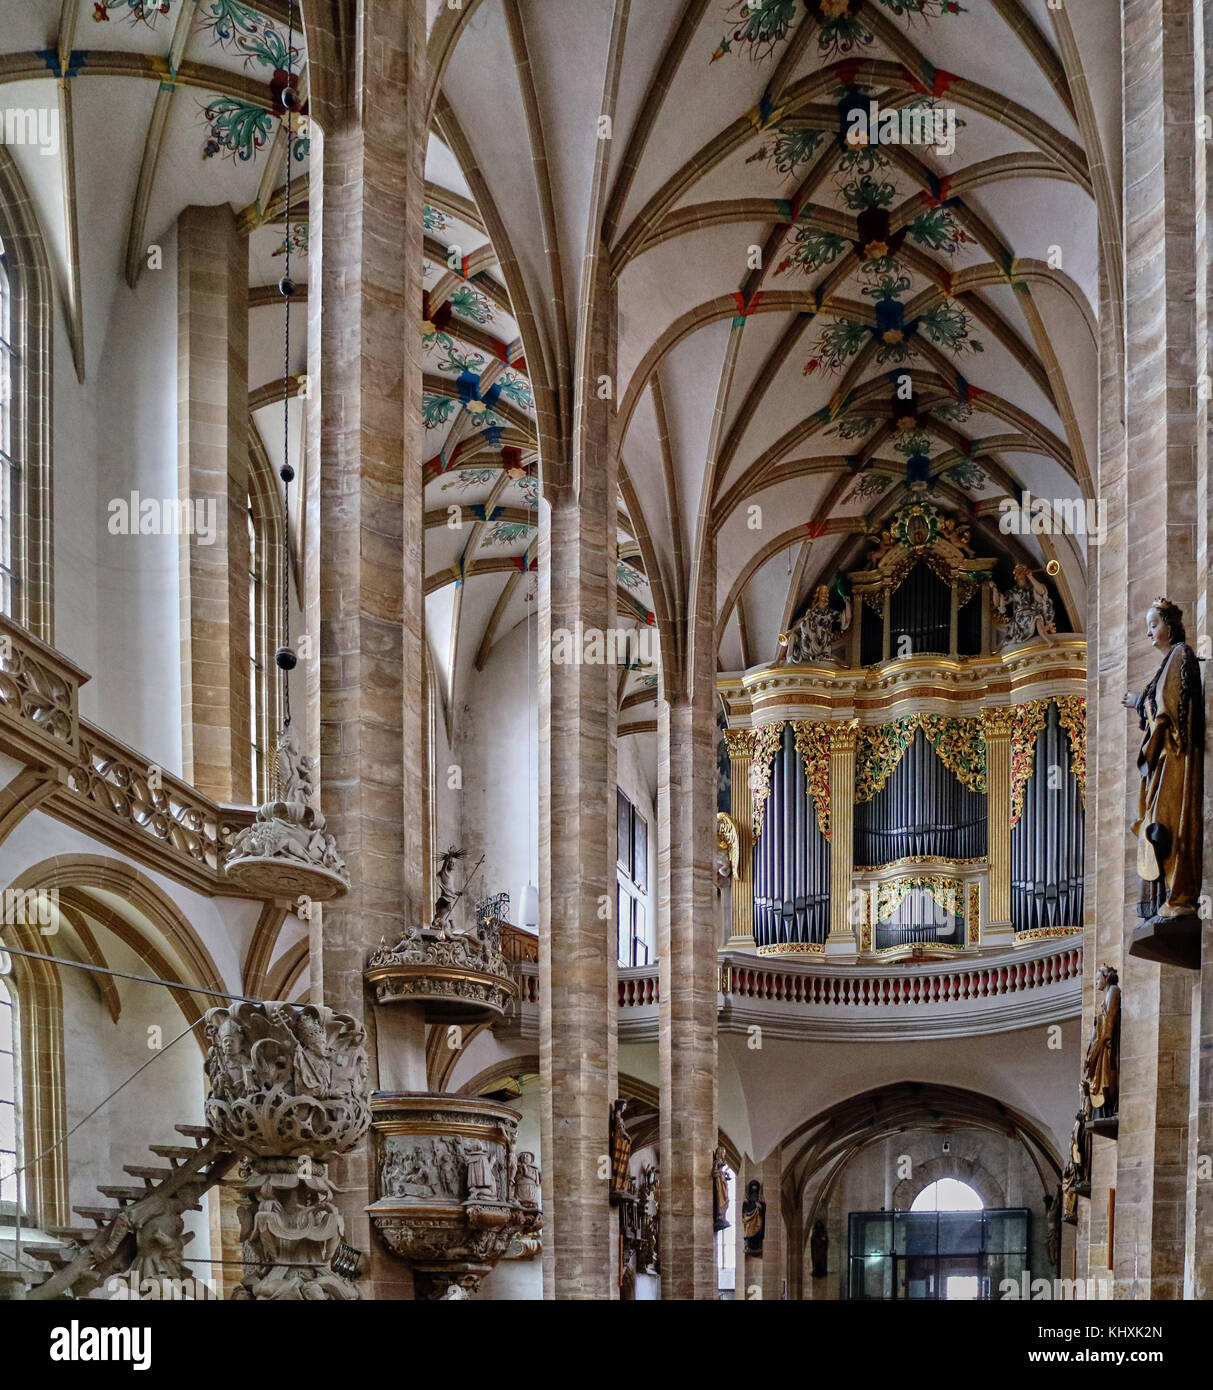 L'Europa, Germania, Sassonia, Freiberg, la città vecchia e la cattedrale St-Mary di stile gotico fiammeggiante è impostato tra il 1490 e il 1501. Trono uno dei più famoso barocco tedesco organi, realizzato nel 1714 da Johann Gottfried Silbermann. Registrazioni di numerosi artisti famosi hanno luogo all'organo, che è uno degli ultimi strumenti di master in un ottimo stato di conservazione, che è stato restaurato nel 1985. Foto Stock